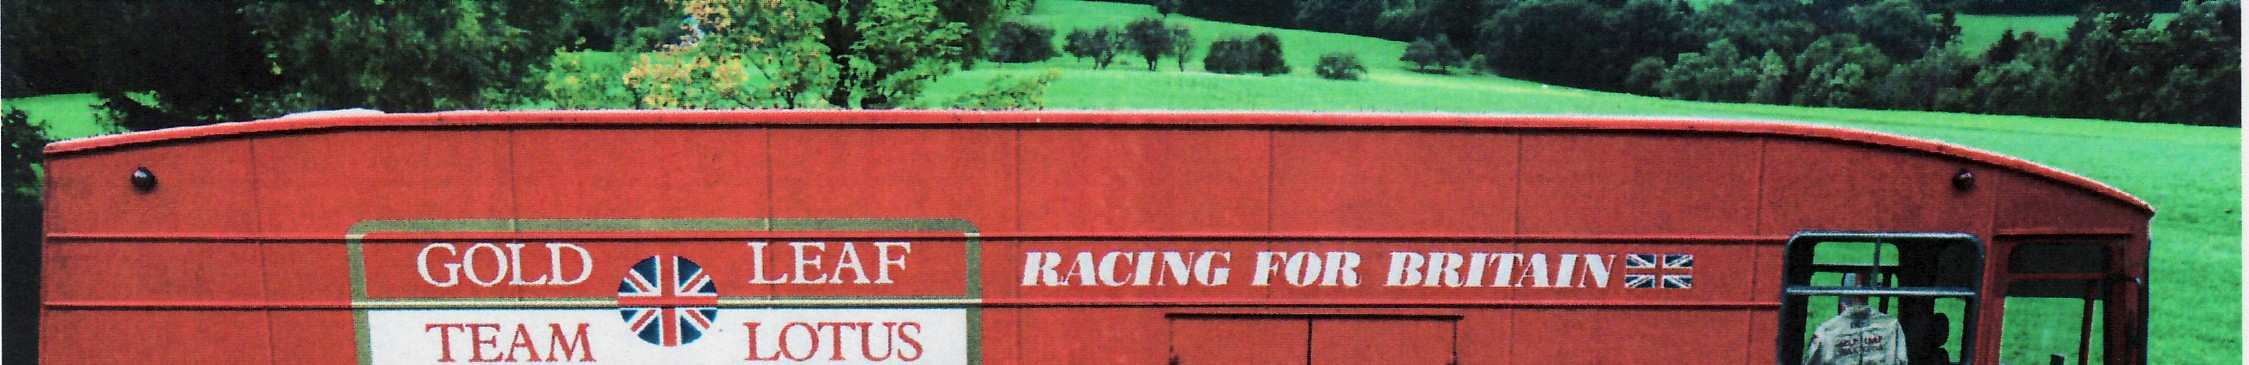 Doch das ist noch lange nicht alles: Vier Jochen Rindt Fahrzeuge wird man in Großraming auch live im Einsatz erleben können.